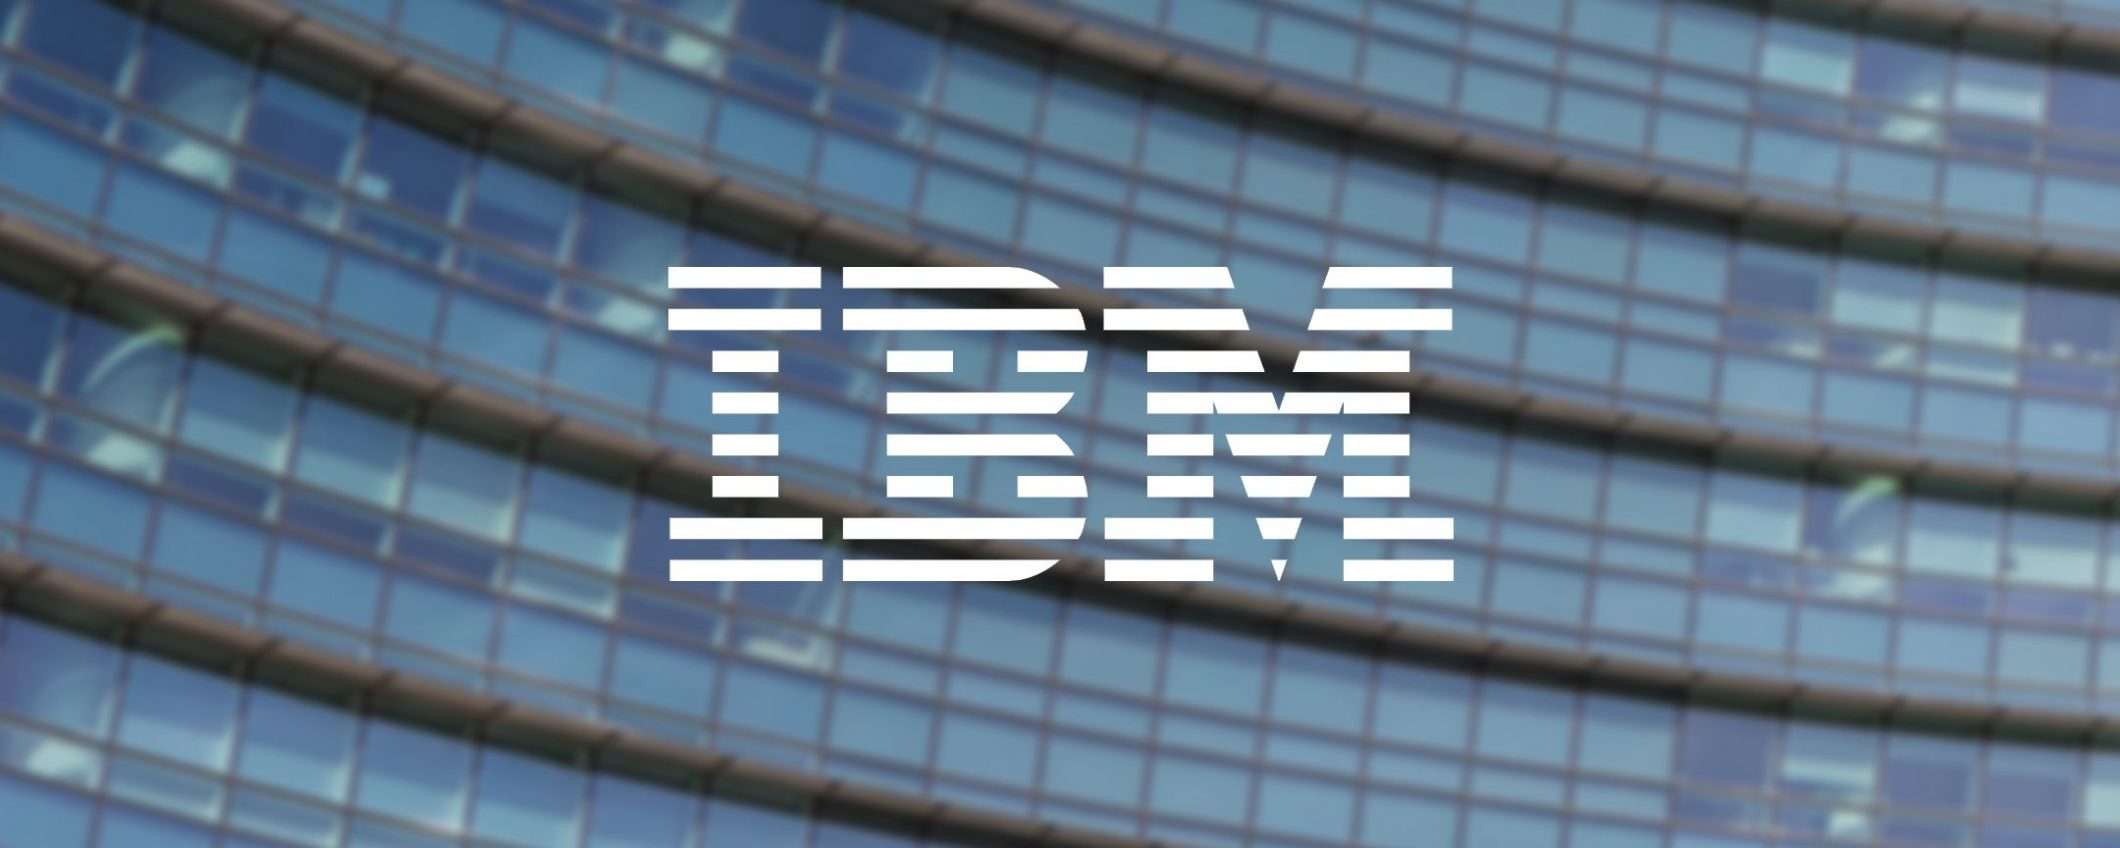 IBM: no licenziamenti sviluppatori causa IA, il CEO è convinto